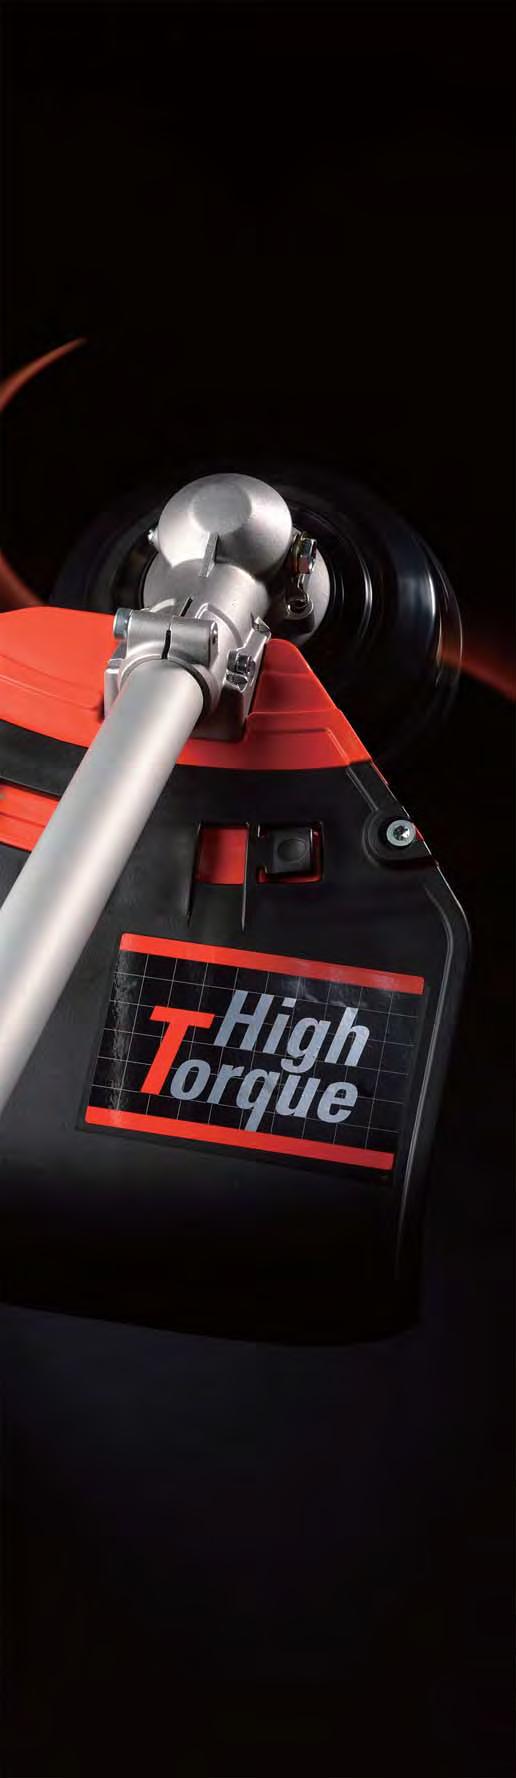 High Torque 3 mm starke Quadratfäden sorgen für ein besseres Schnittbild und weisen eine längere Haltbarkeit auf.